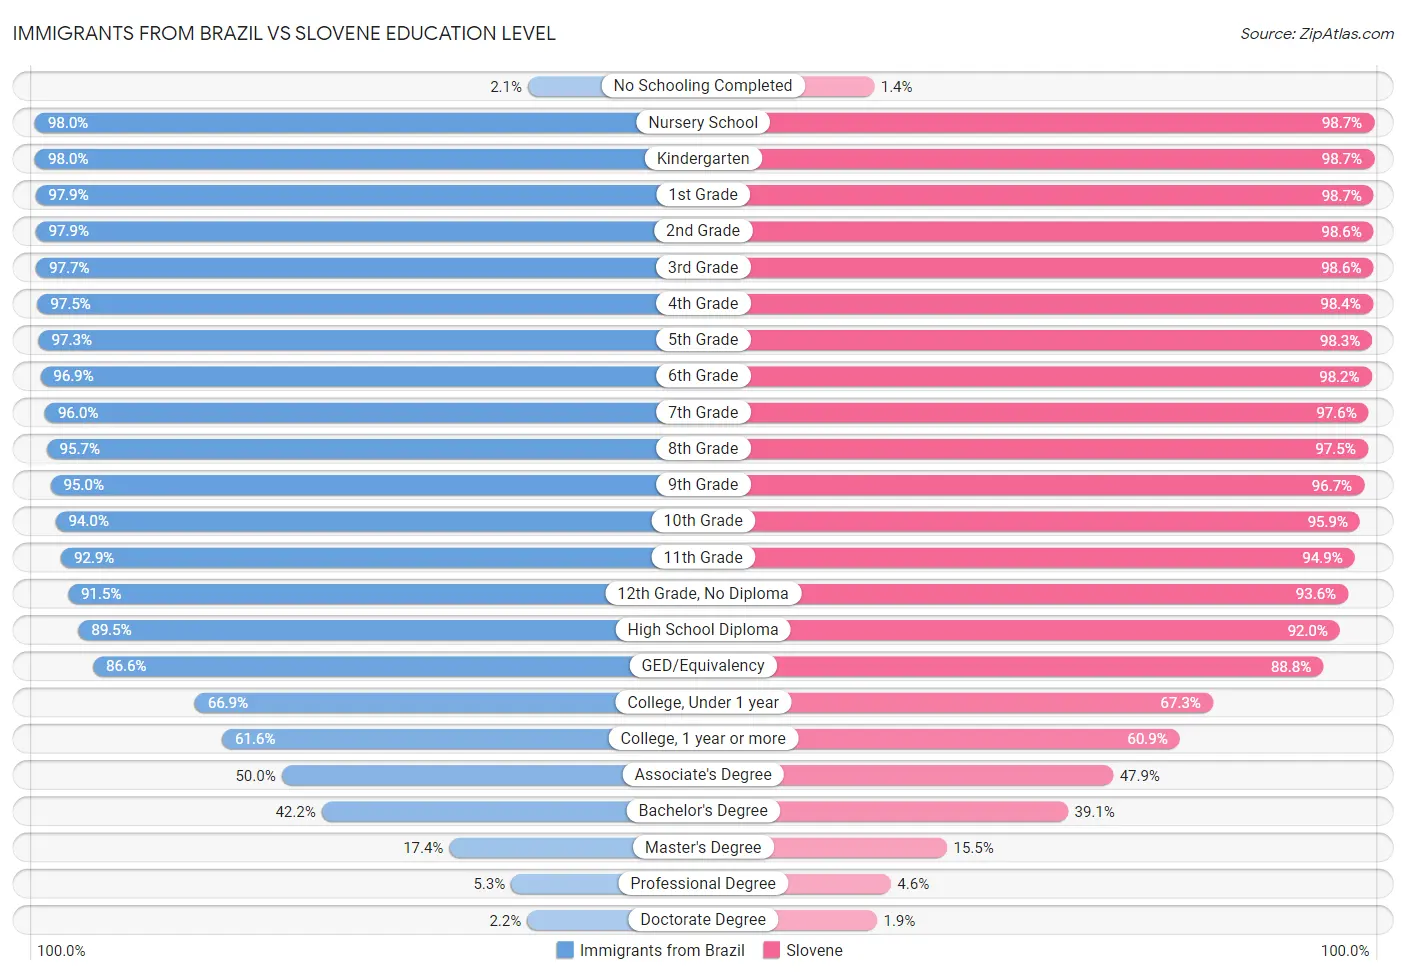 Immigrants from Brazil vs Slovene Education Level